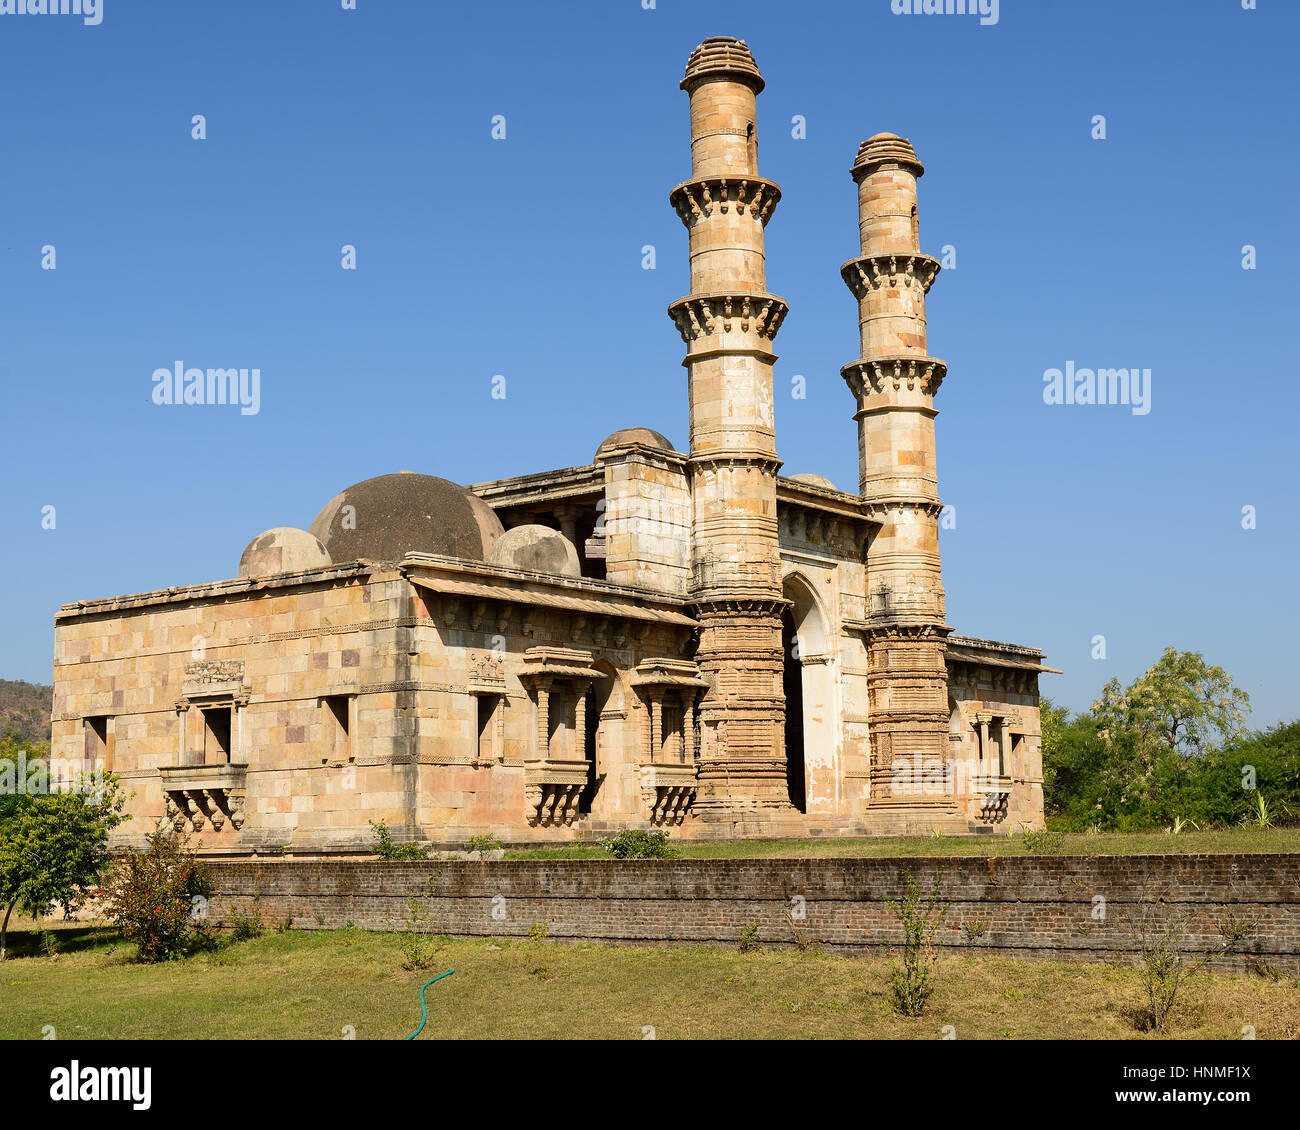 Parc archéologique de Champaner - Pavagadh est une ville historique dans l'état du Gujarat. Kevda mosquée Masjid. (UNESCO) Banque D'Images